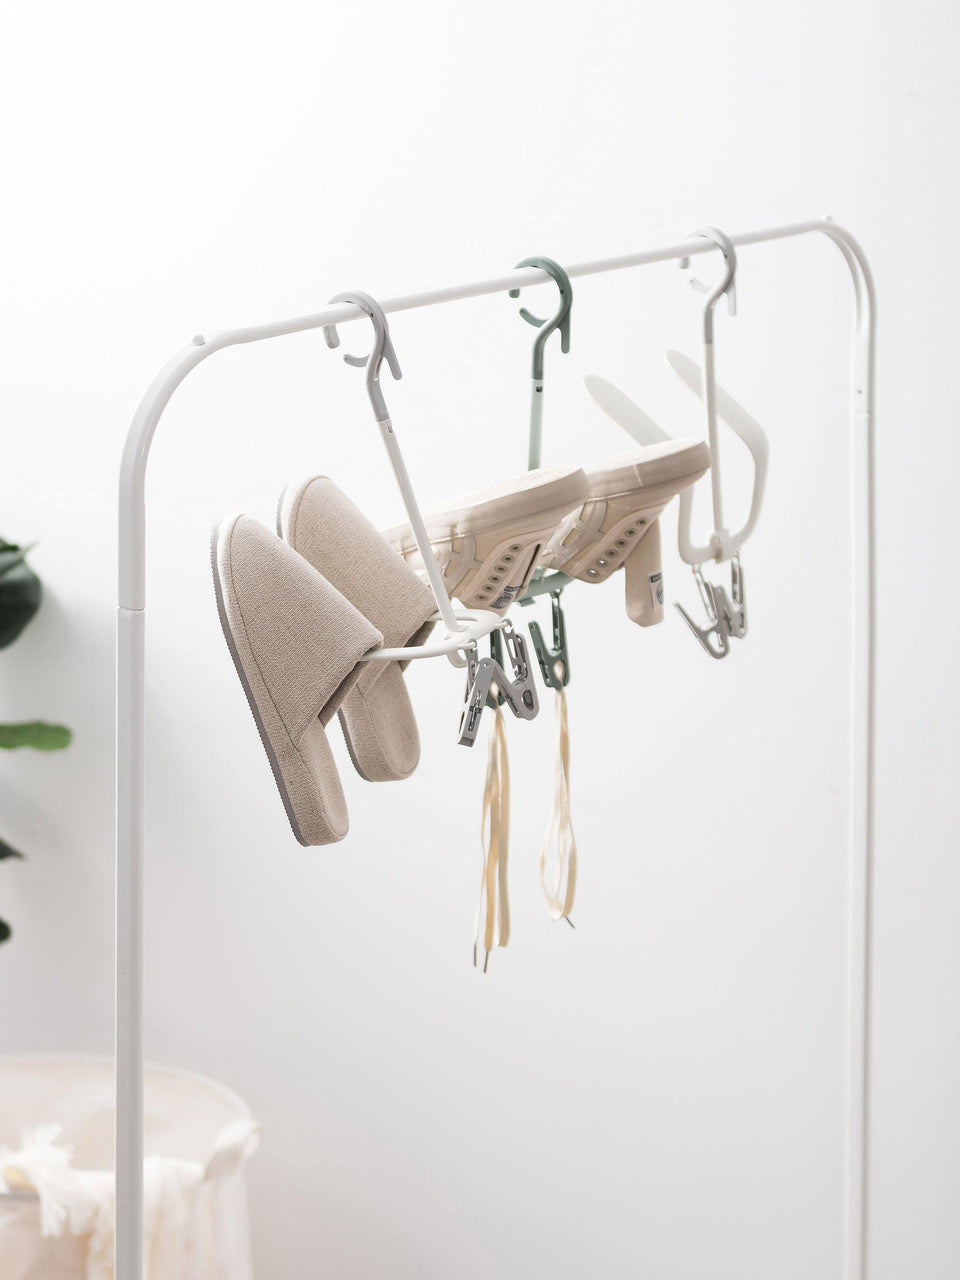 Ein’s 360 ° Shoe Drying Hanger - Ein's Cuteness Lab